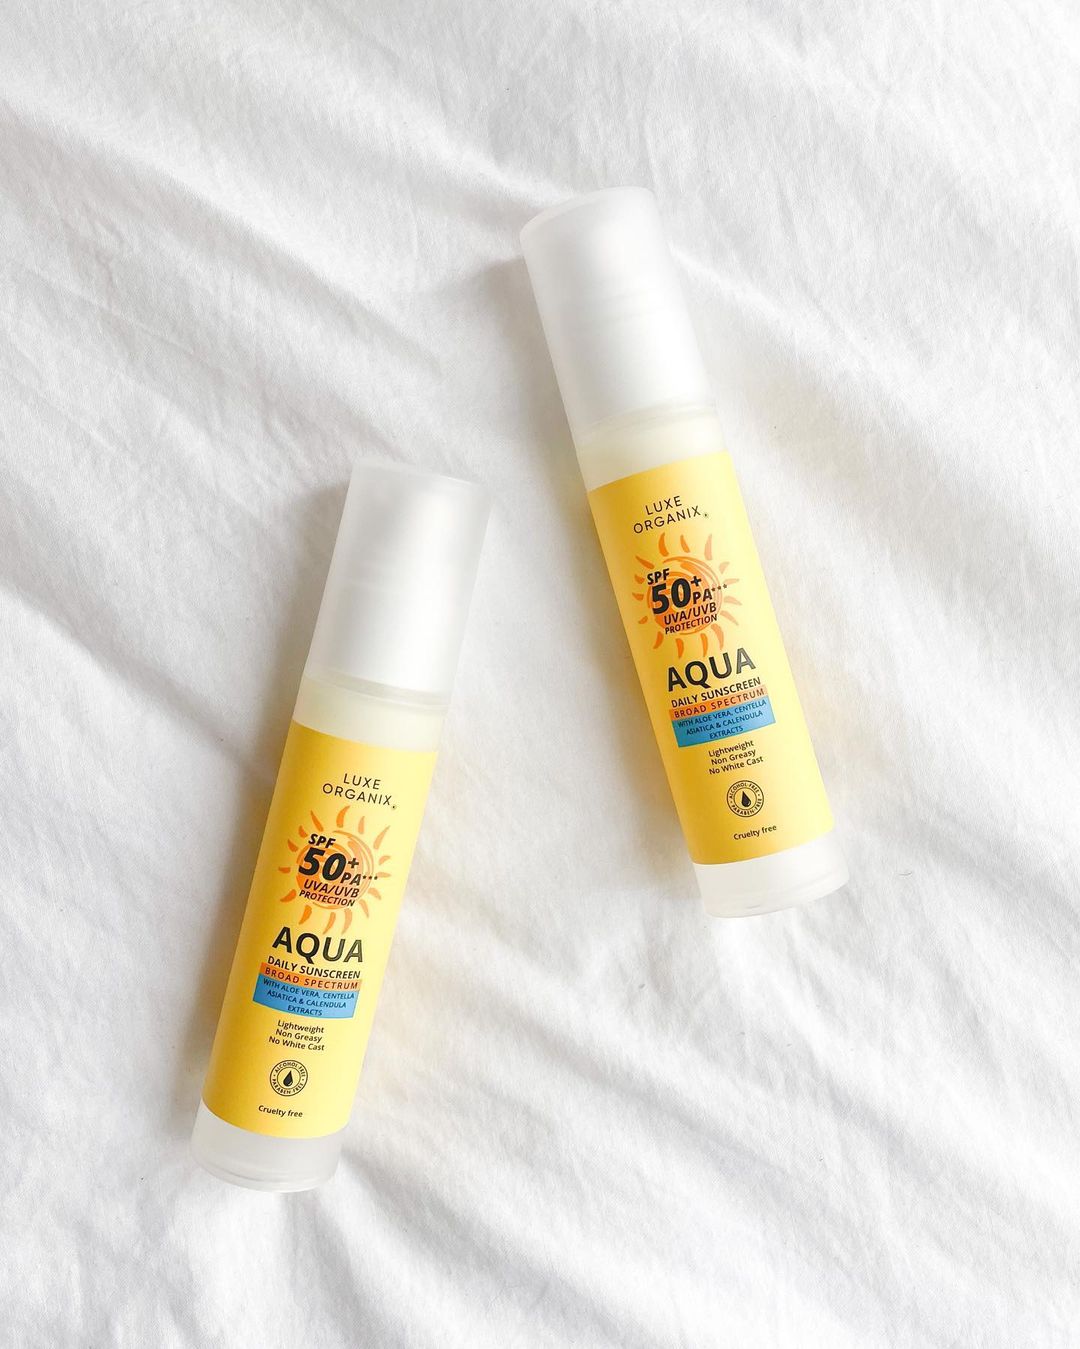 Luxe Organix Aqua Daily Sunscreen